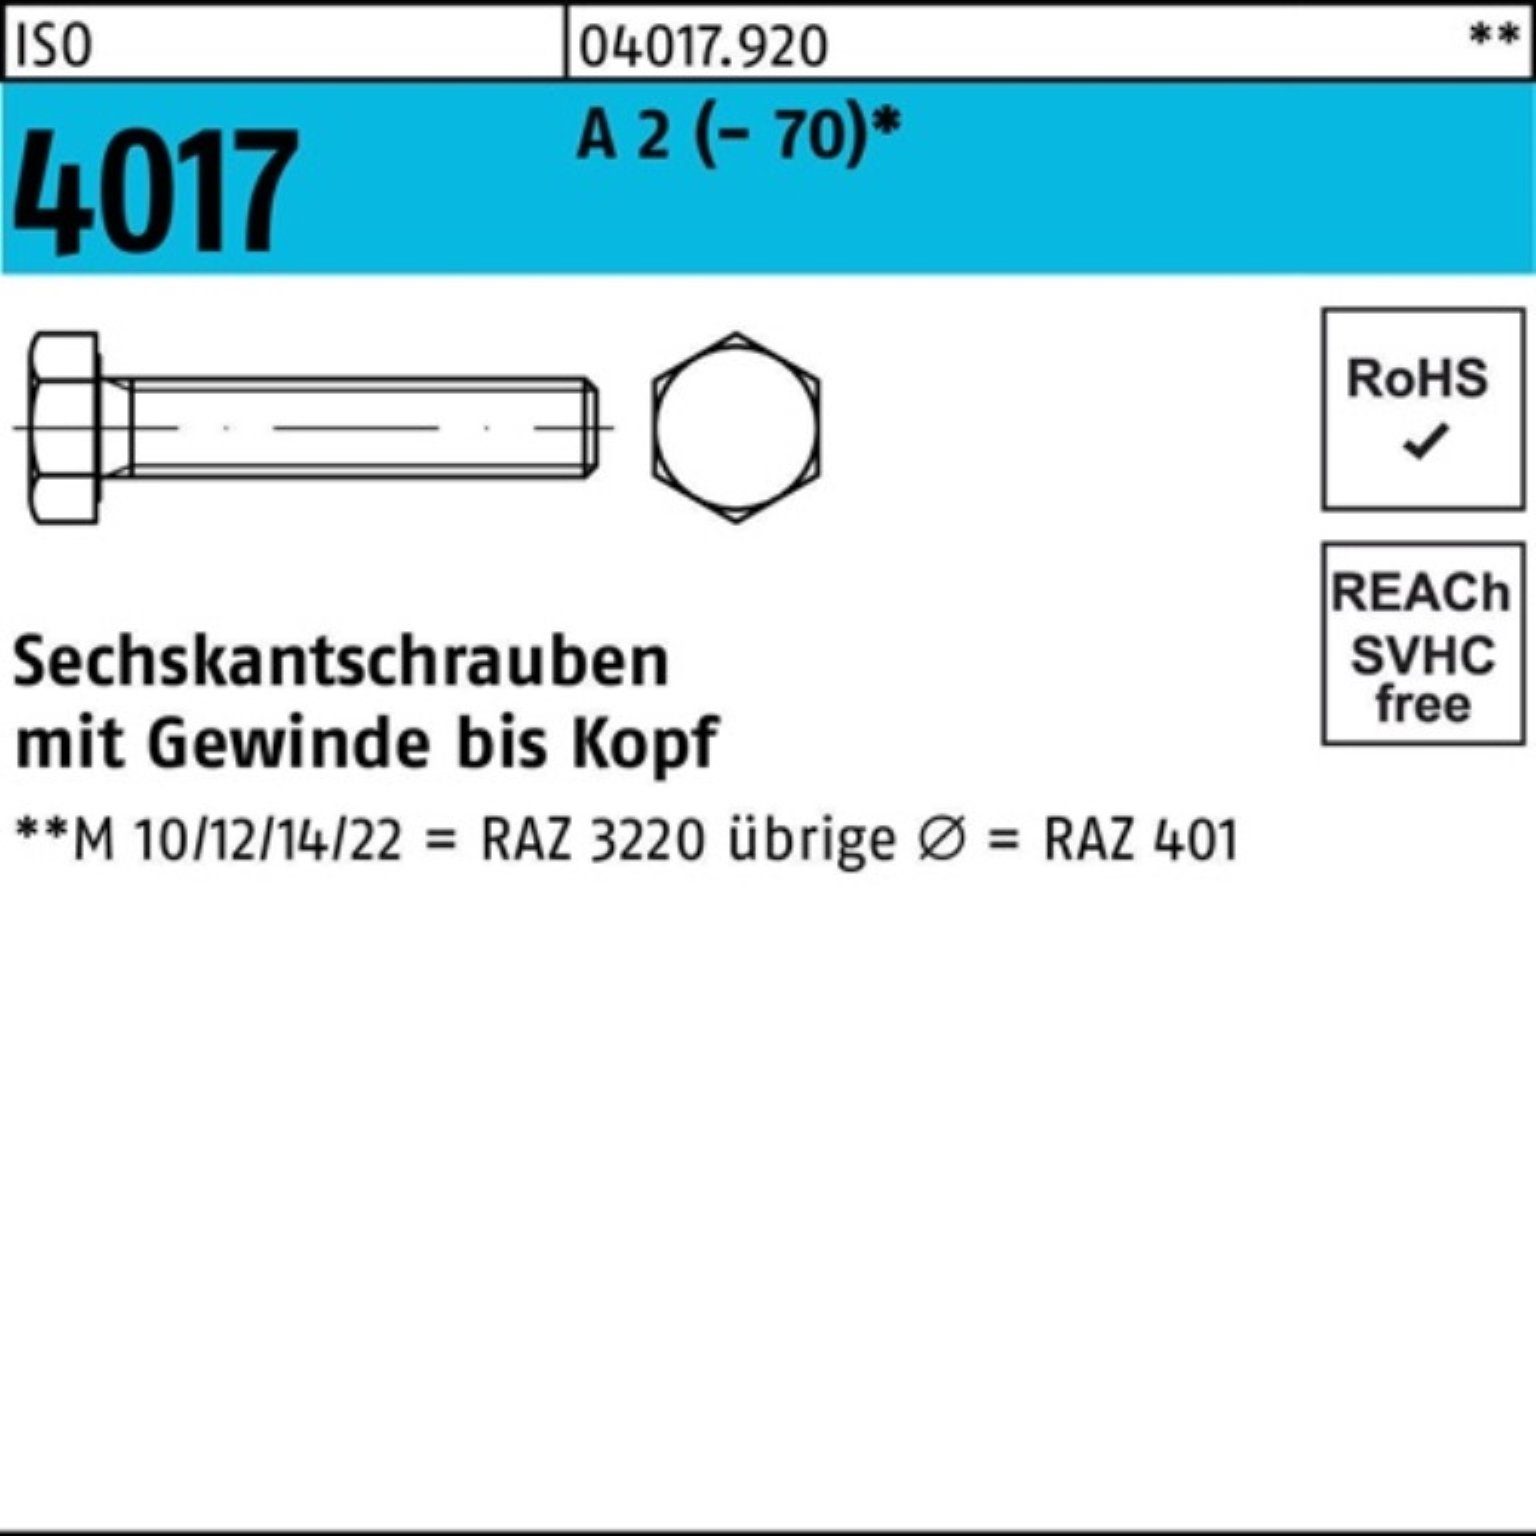 Bufab Sechskantschraube 100er Pack Sechskantschraube ISO 4017 VG M24x 180 A 2 (70) 1 Stück